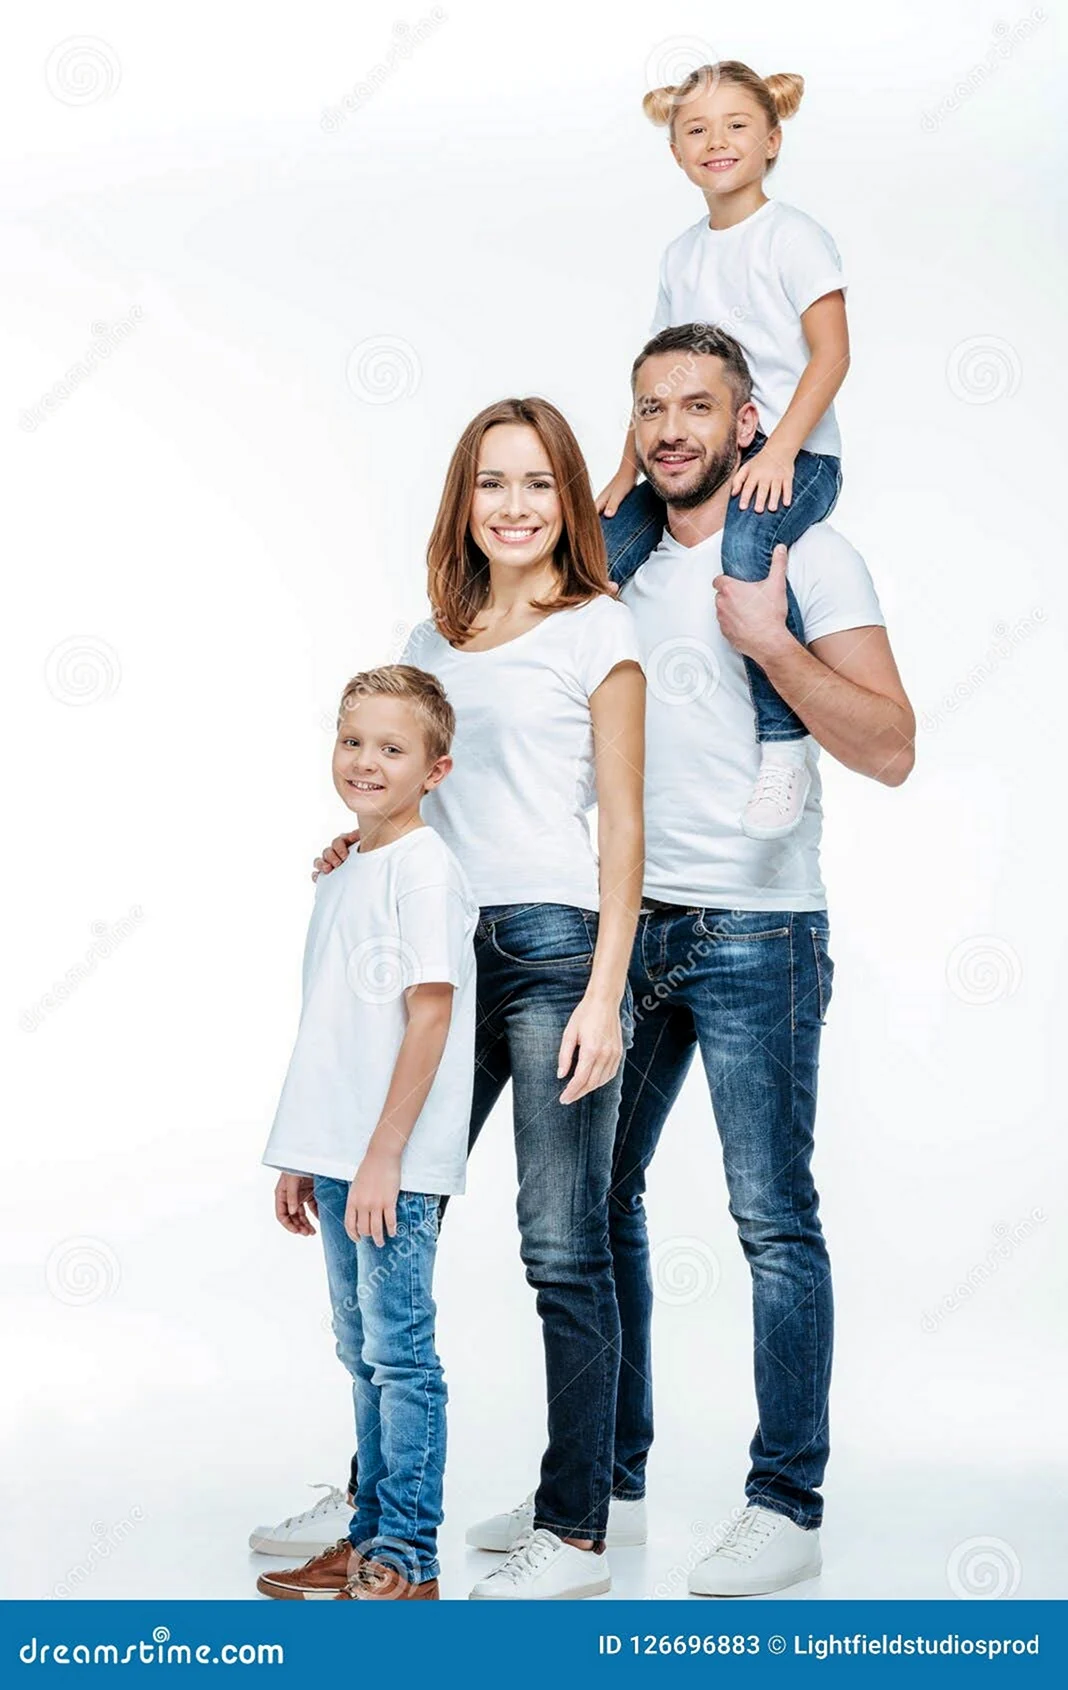 Фотосессия семьи в джинсах